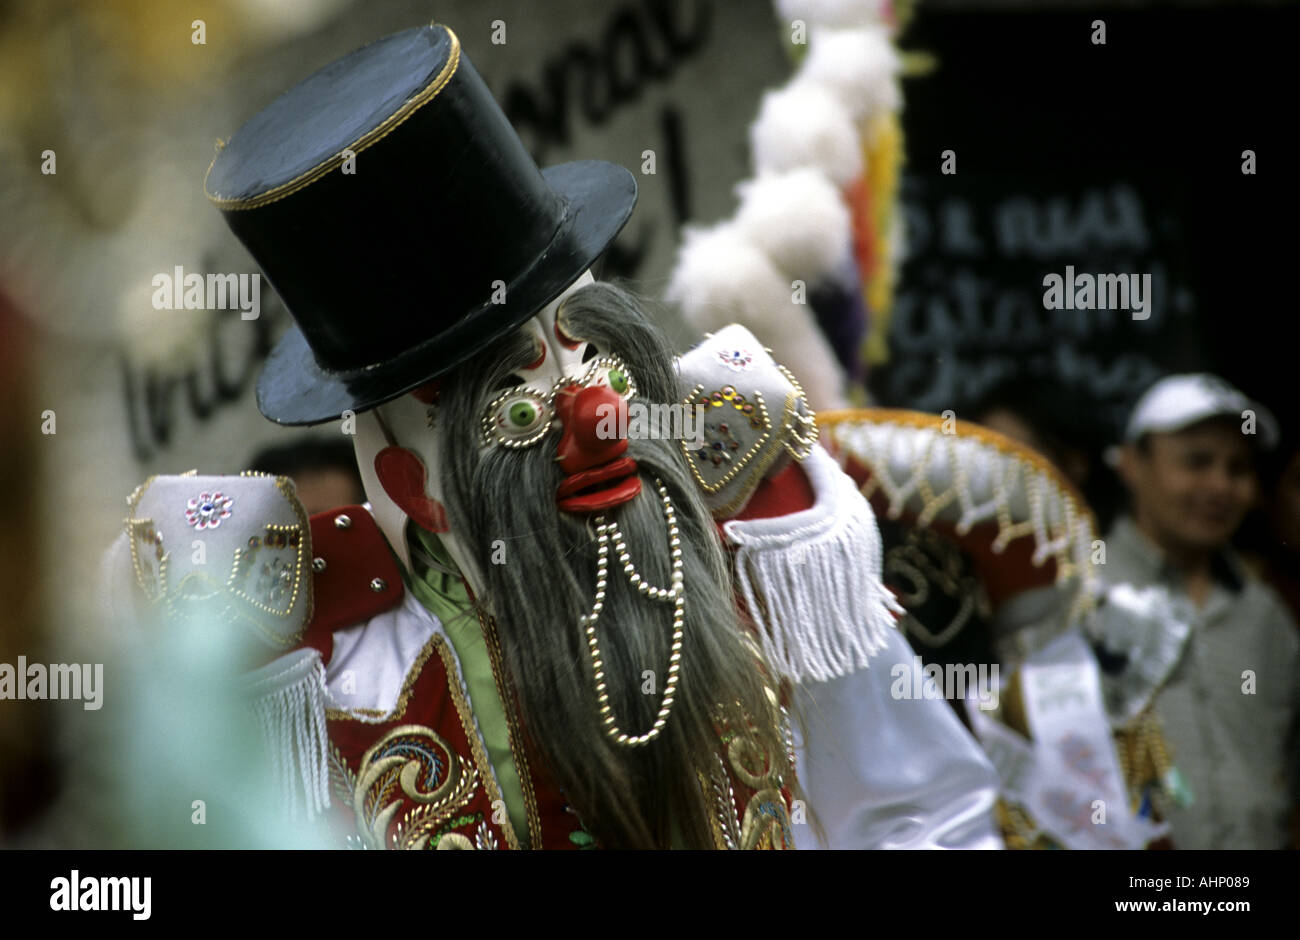 Danseur masqué Pérou Amérique du Sud Amérique latine Banque D'Images